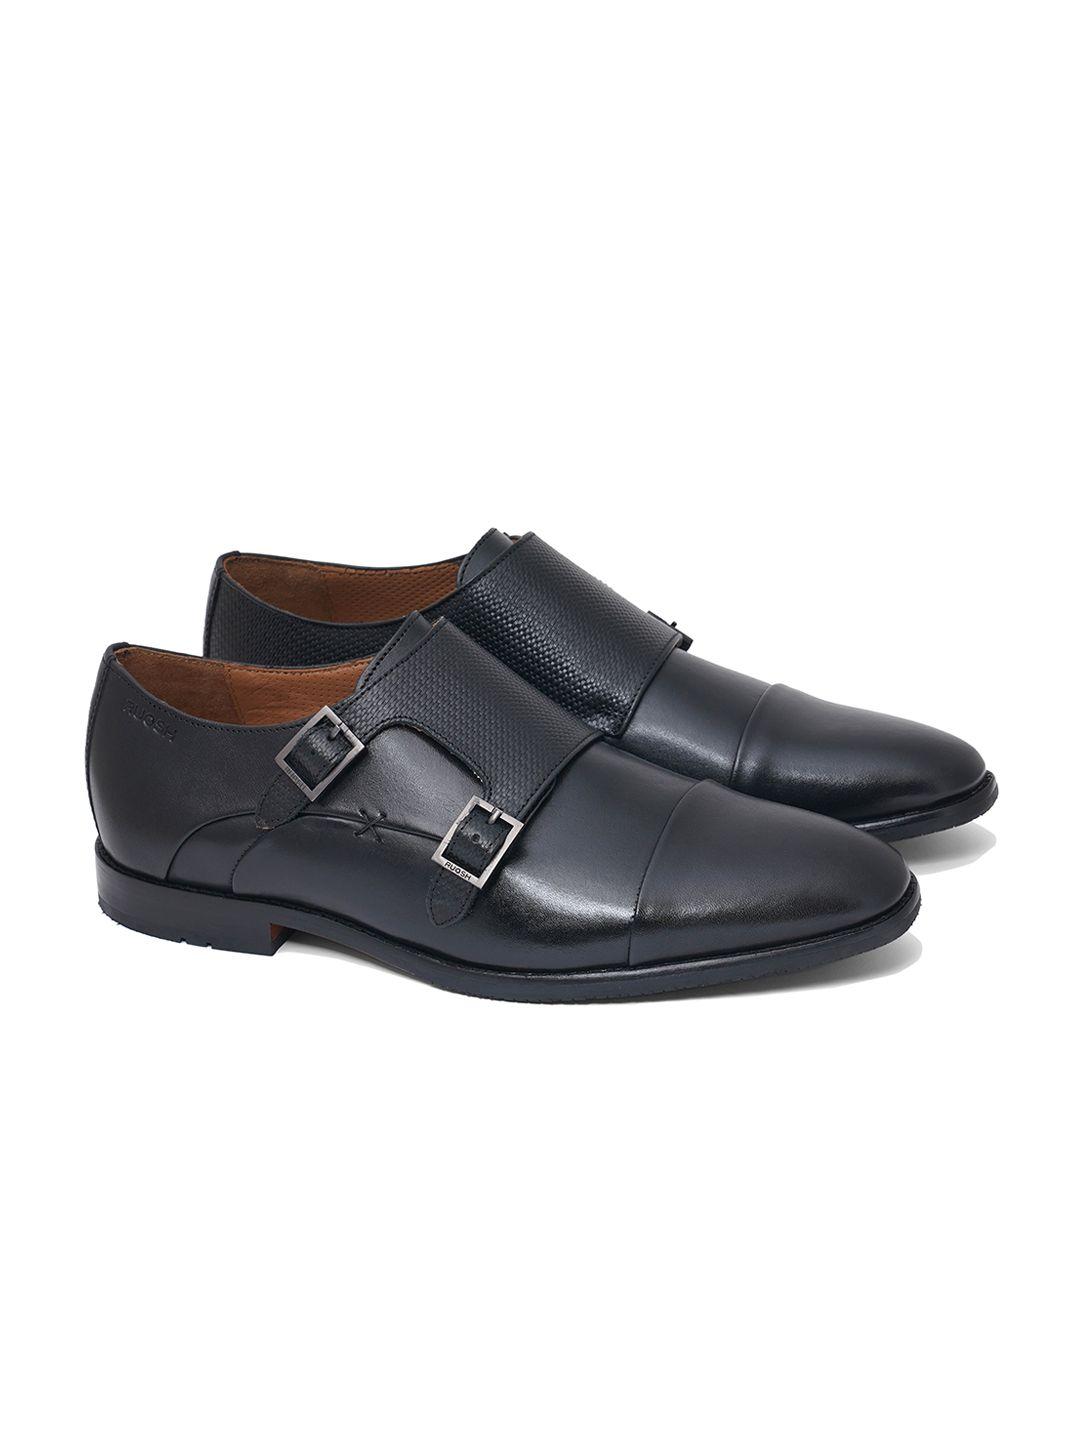 ruosh-men-black-solid-monk-shoes